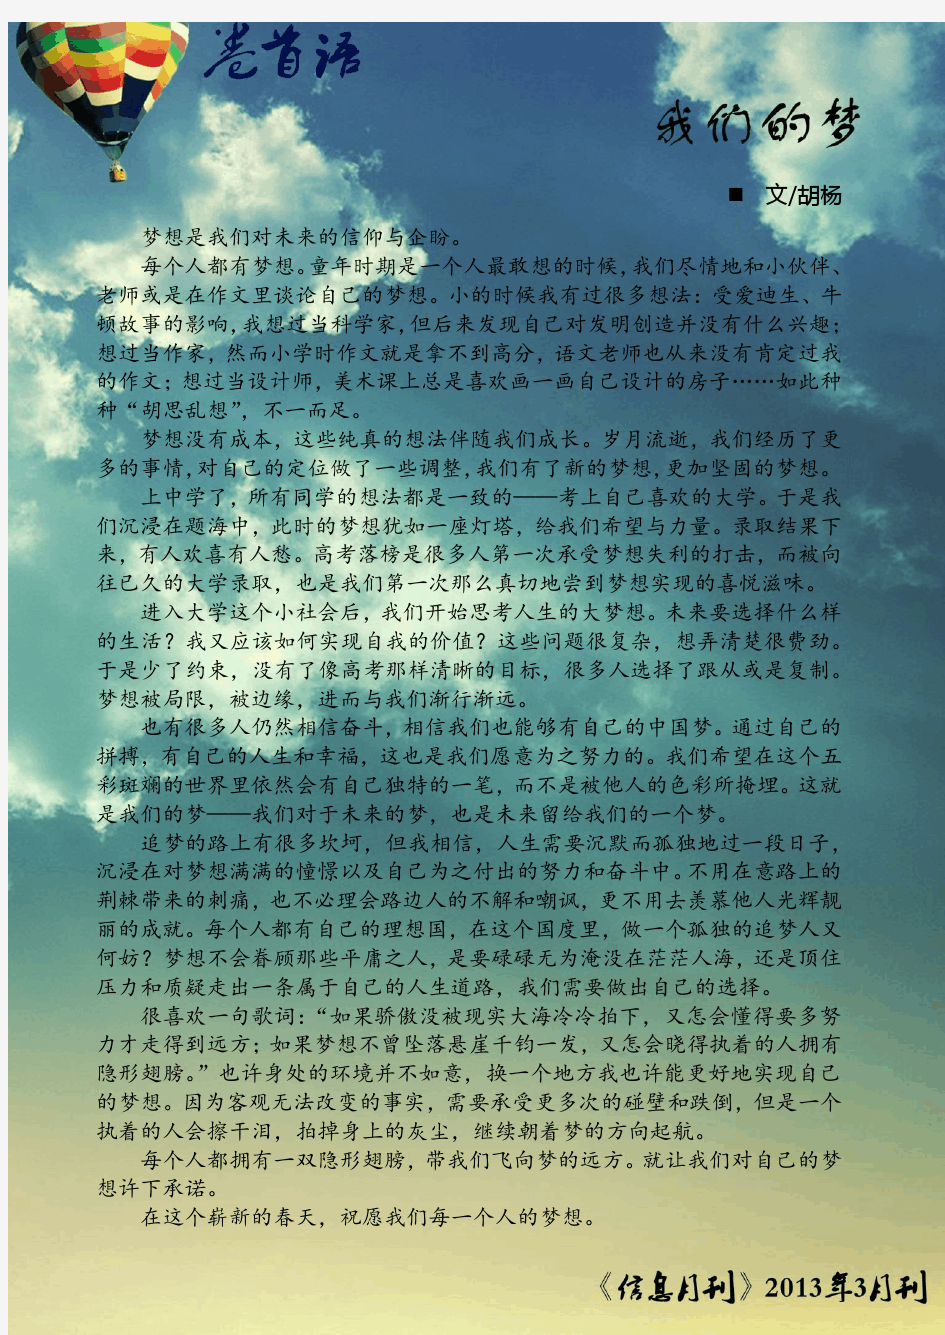 中国人民大学信息学院《信息月刊》2013年3月刊